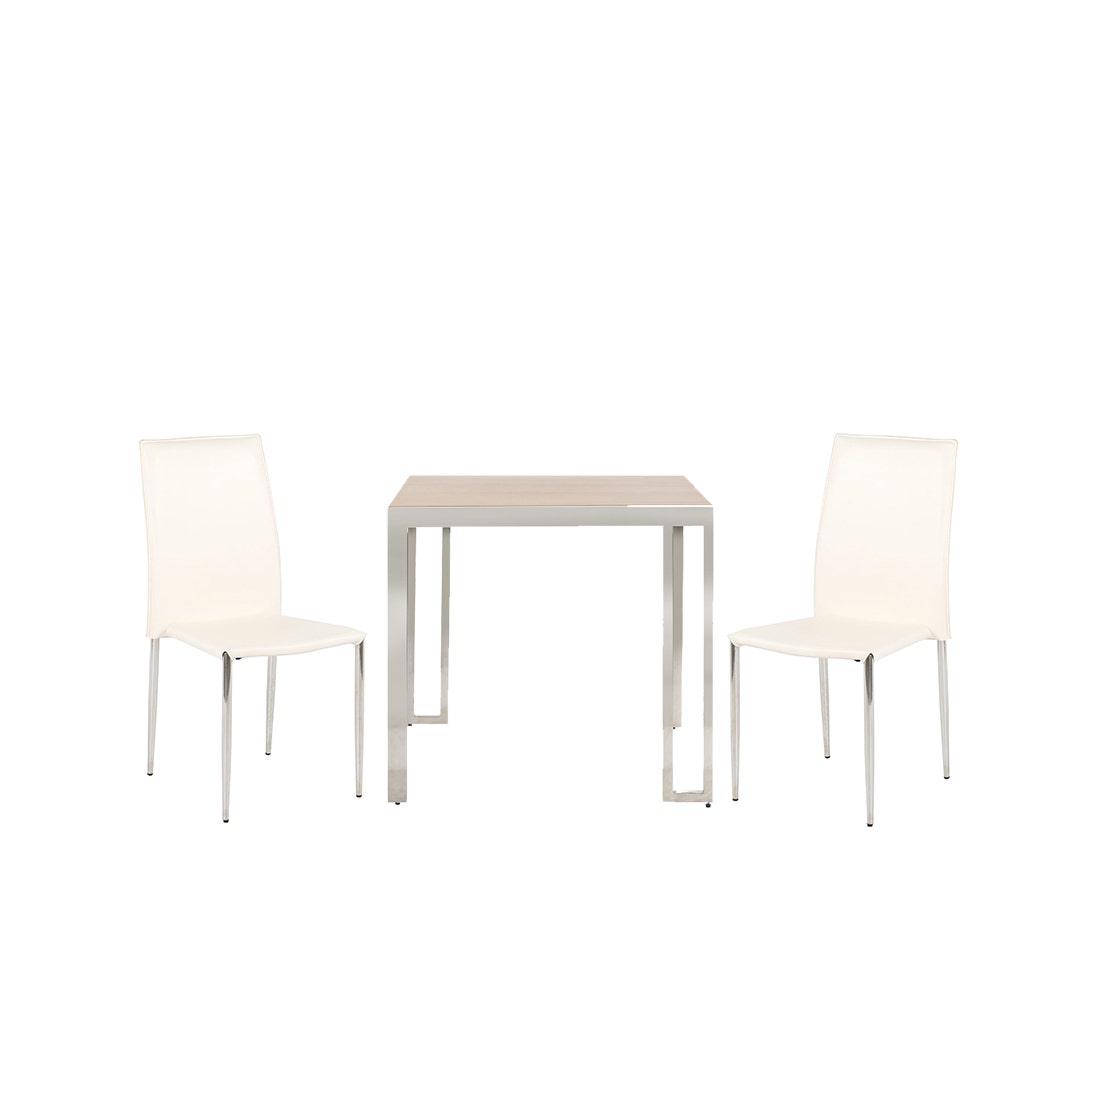 ชุดโต๊ะอาหาร รุ่น Montis & เก้าอี้ Yinta สีขาว